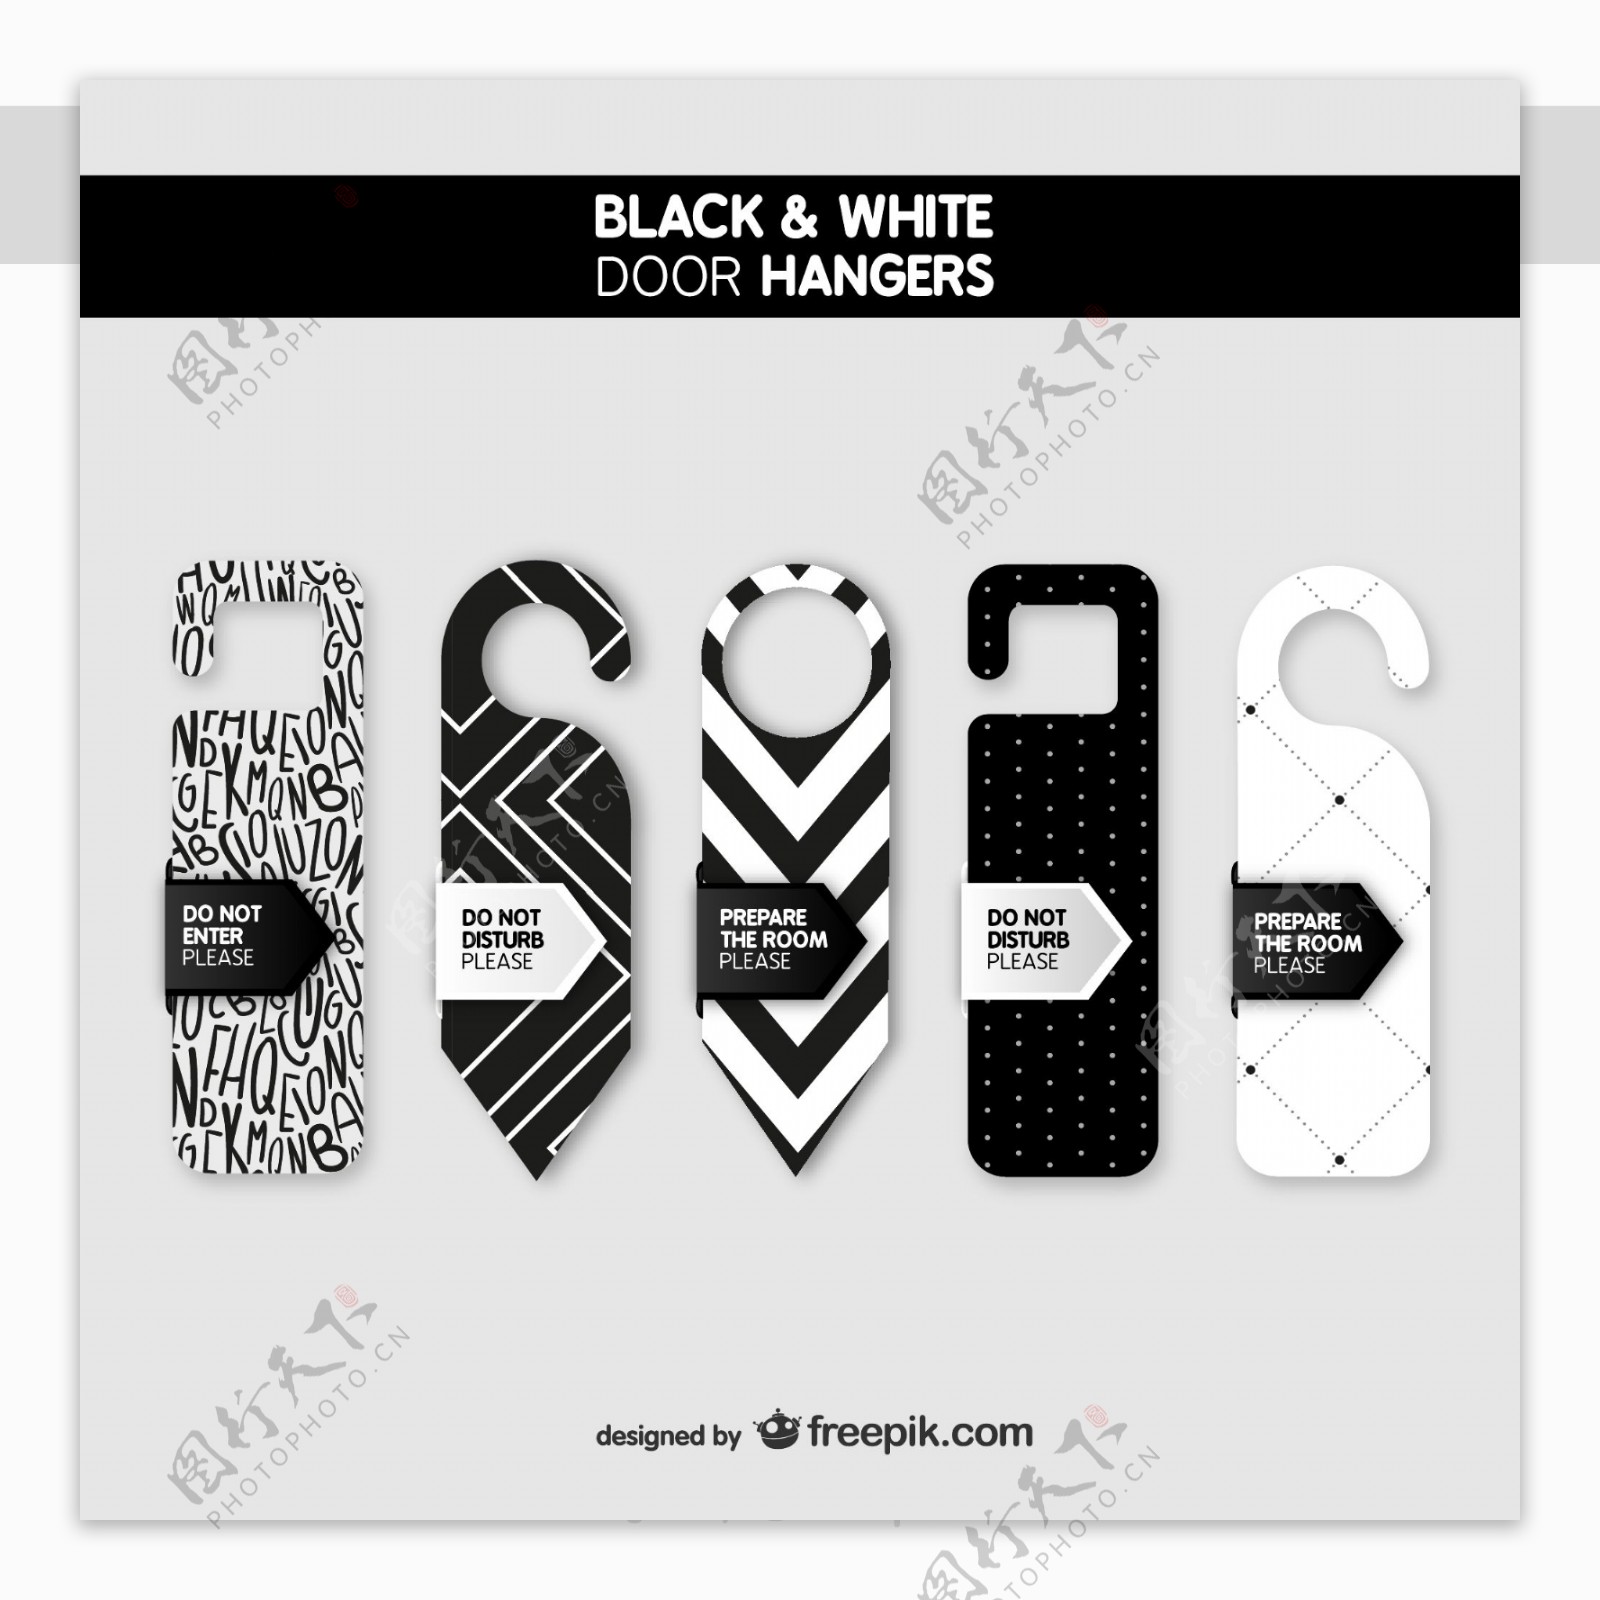 时尚黑白色门挂牌设计素材图片